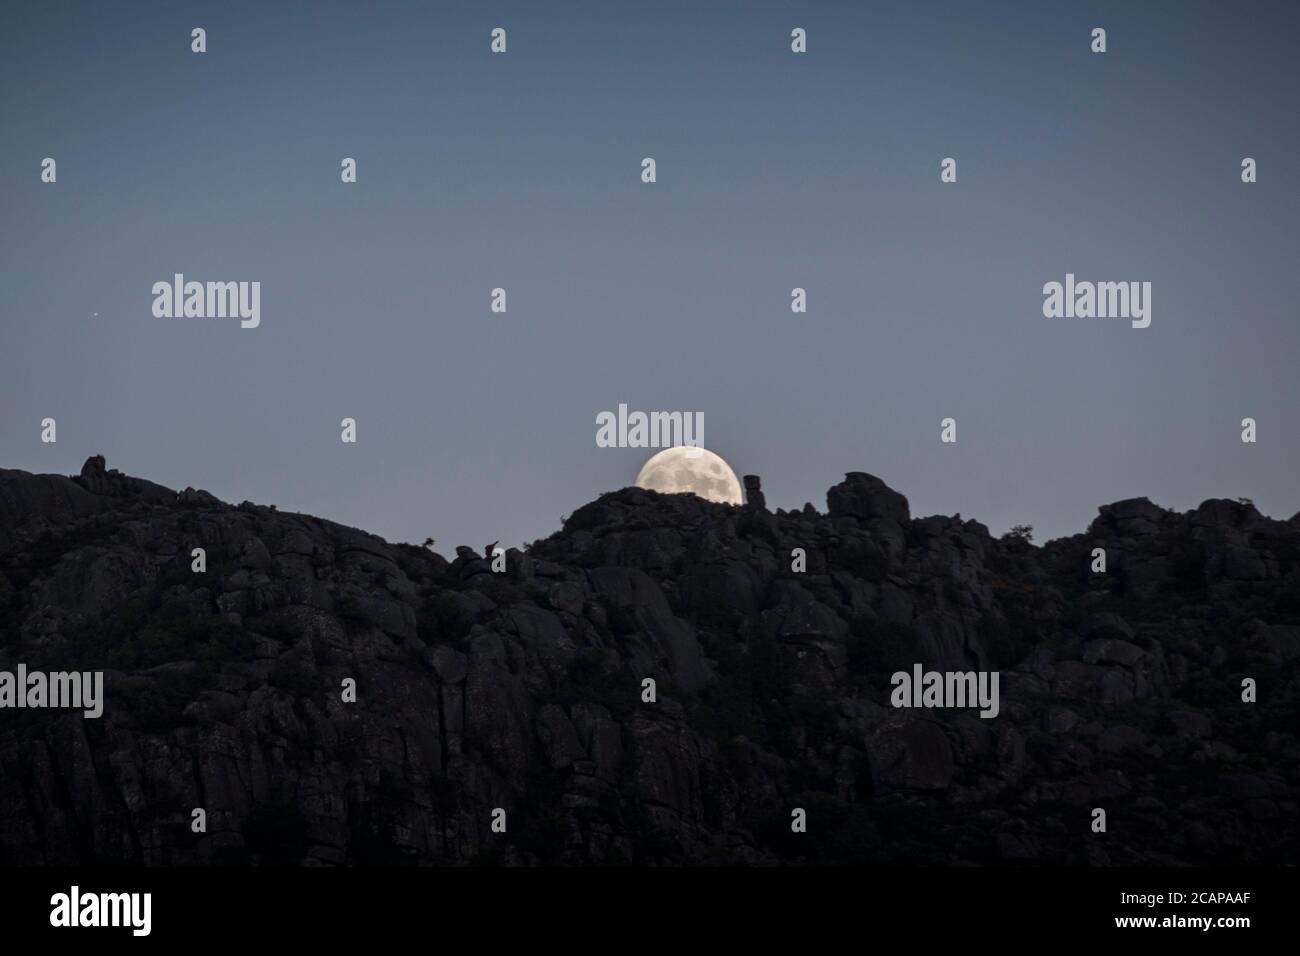 La lune presque complète s'élève lentement derrière des pierres sur les sommets de montagne en un moment de crépuscule, loin dans la distance Banque D'Images